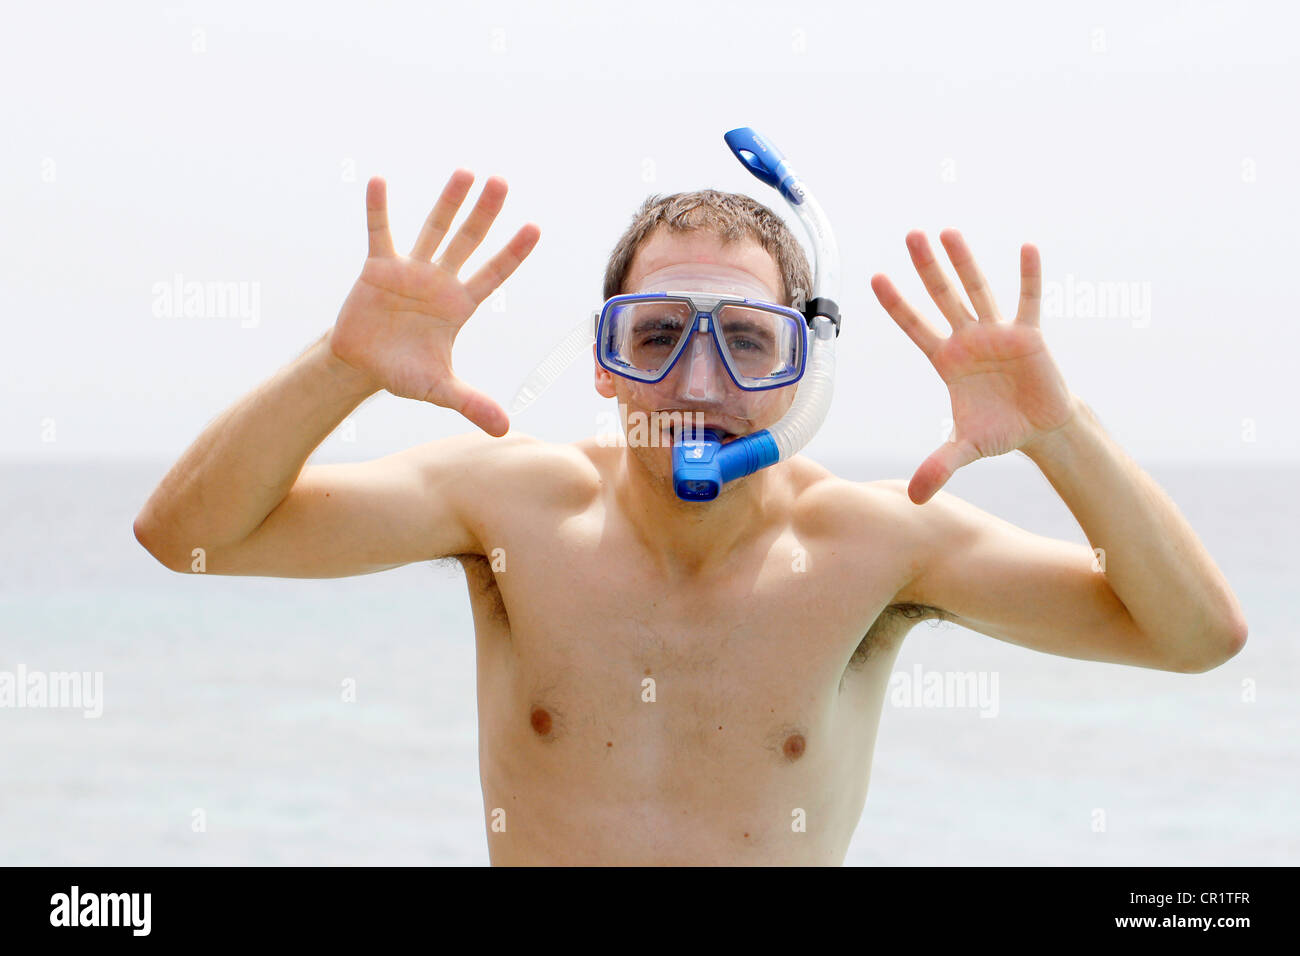 Mann trägt, Tauchen Brille und Schnorchel, bereit um zu tauchen, zeigt Hände, Malediven, Indischer Ozean Stockfoto